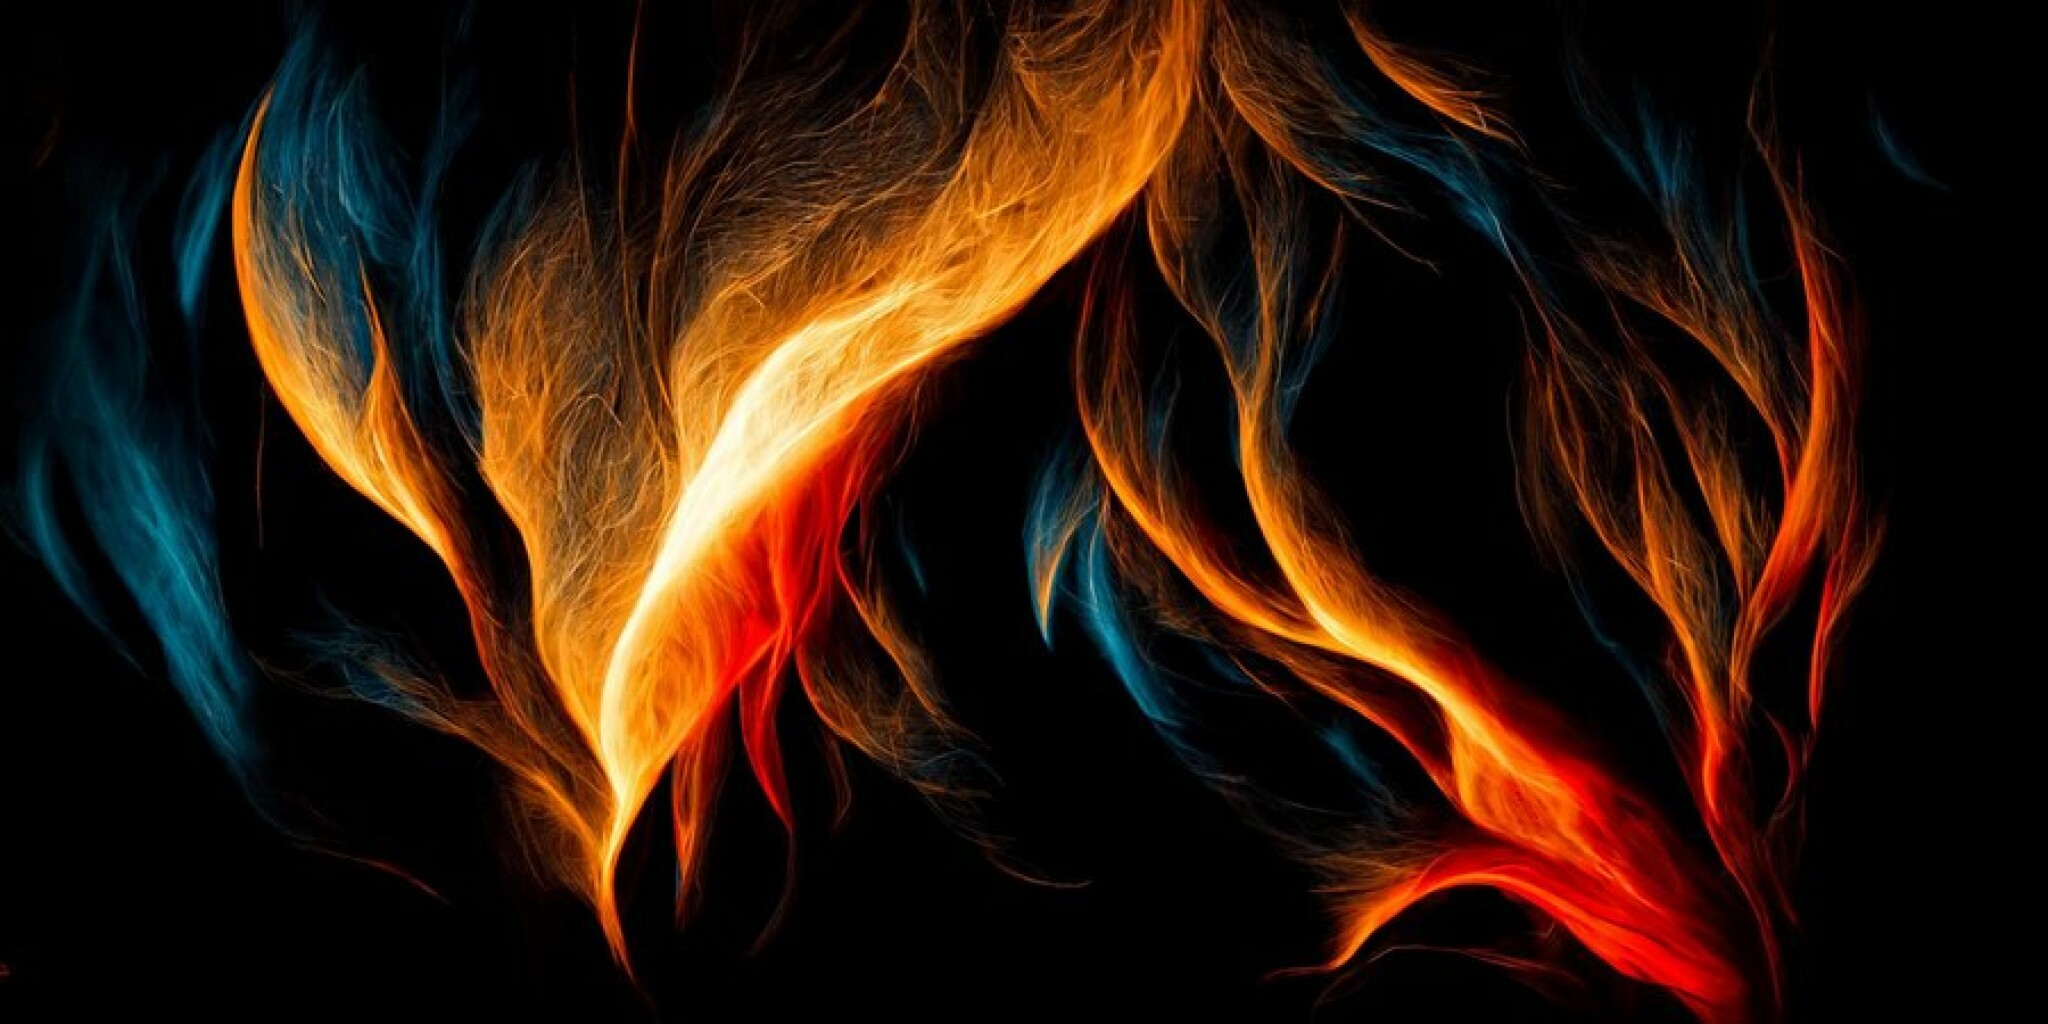 fire-flame-black-background-digital-illustration_742252-472.jpg